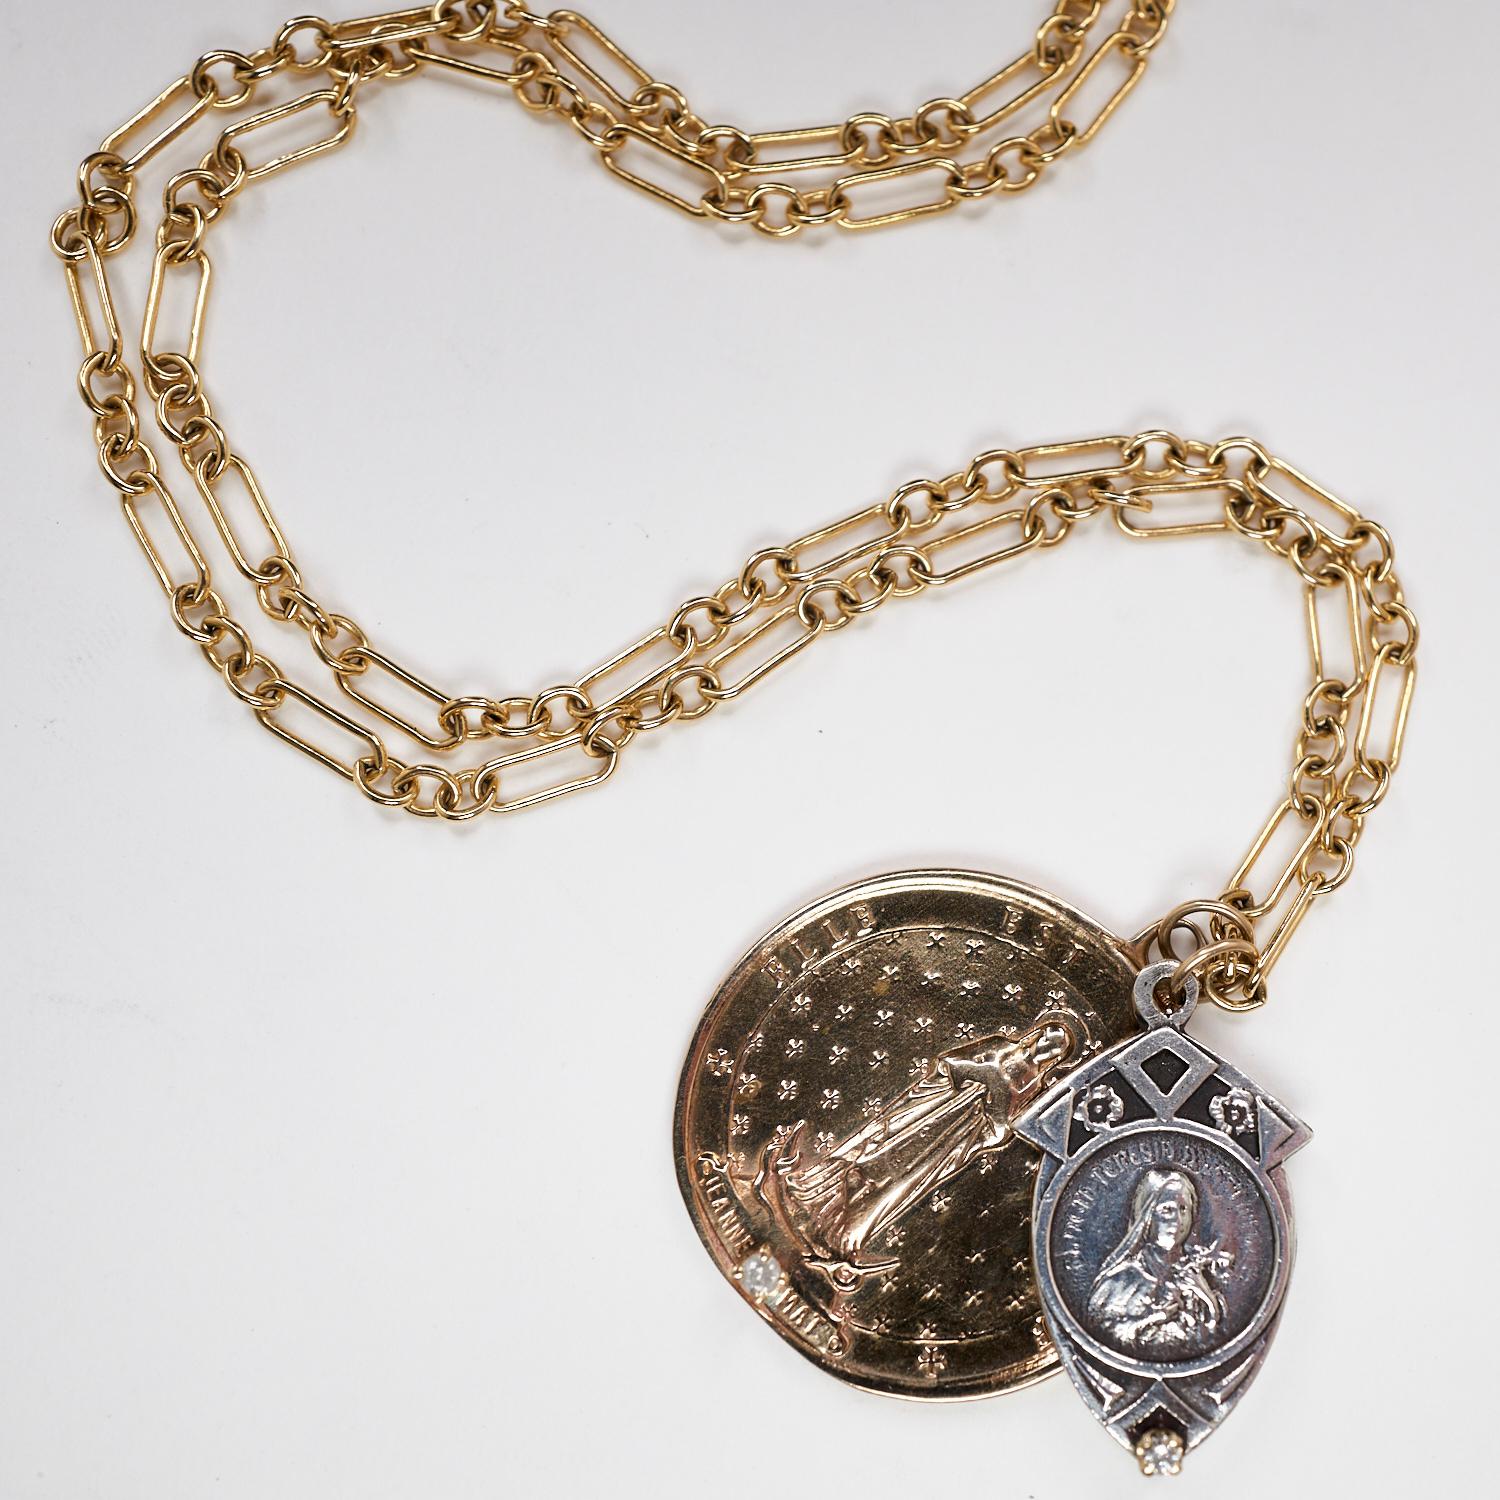 Deux diamants blancs sertis dans des griffes en or sur un pendentif en bronze représentant une pièce de monnaie et une figurine en argent représentant une Vierge Marie, le tout suspendu à une chaîne épaisse en or, unique en son genre,  24